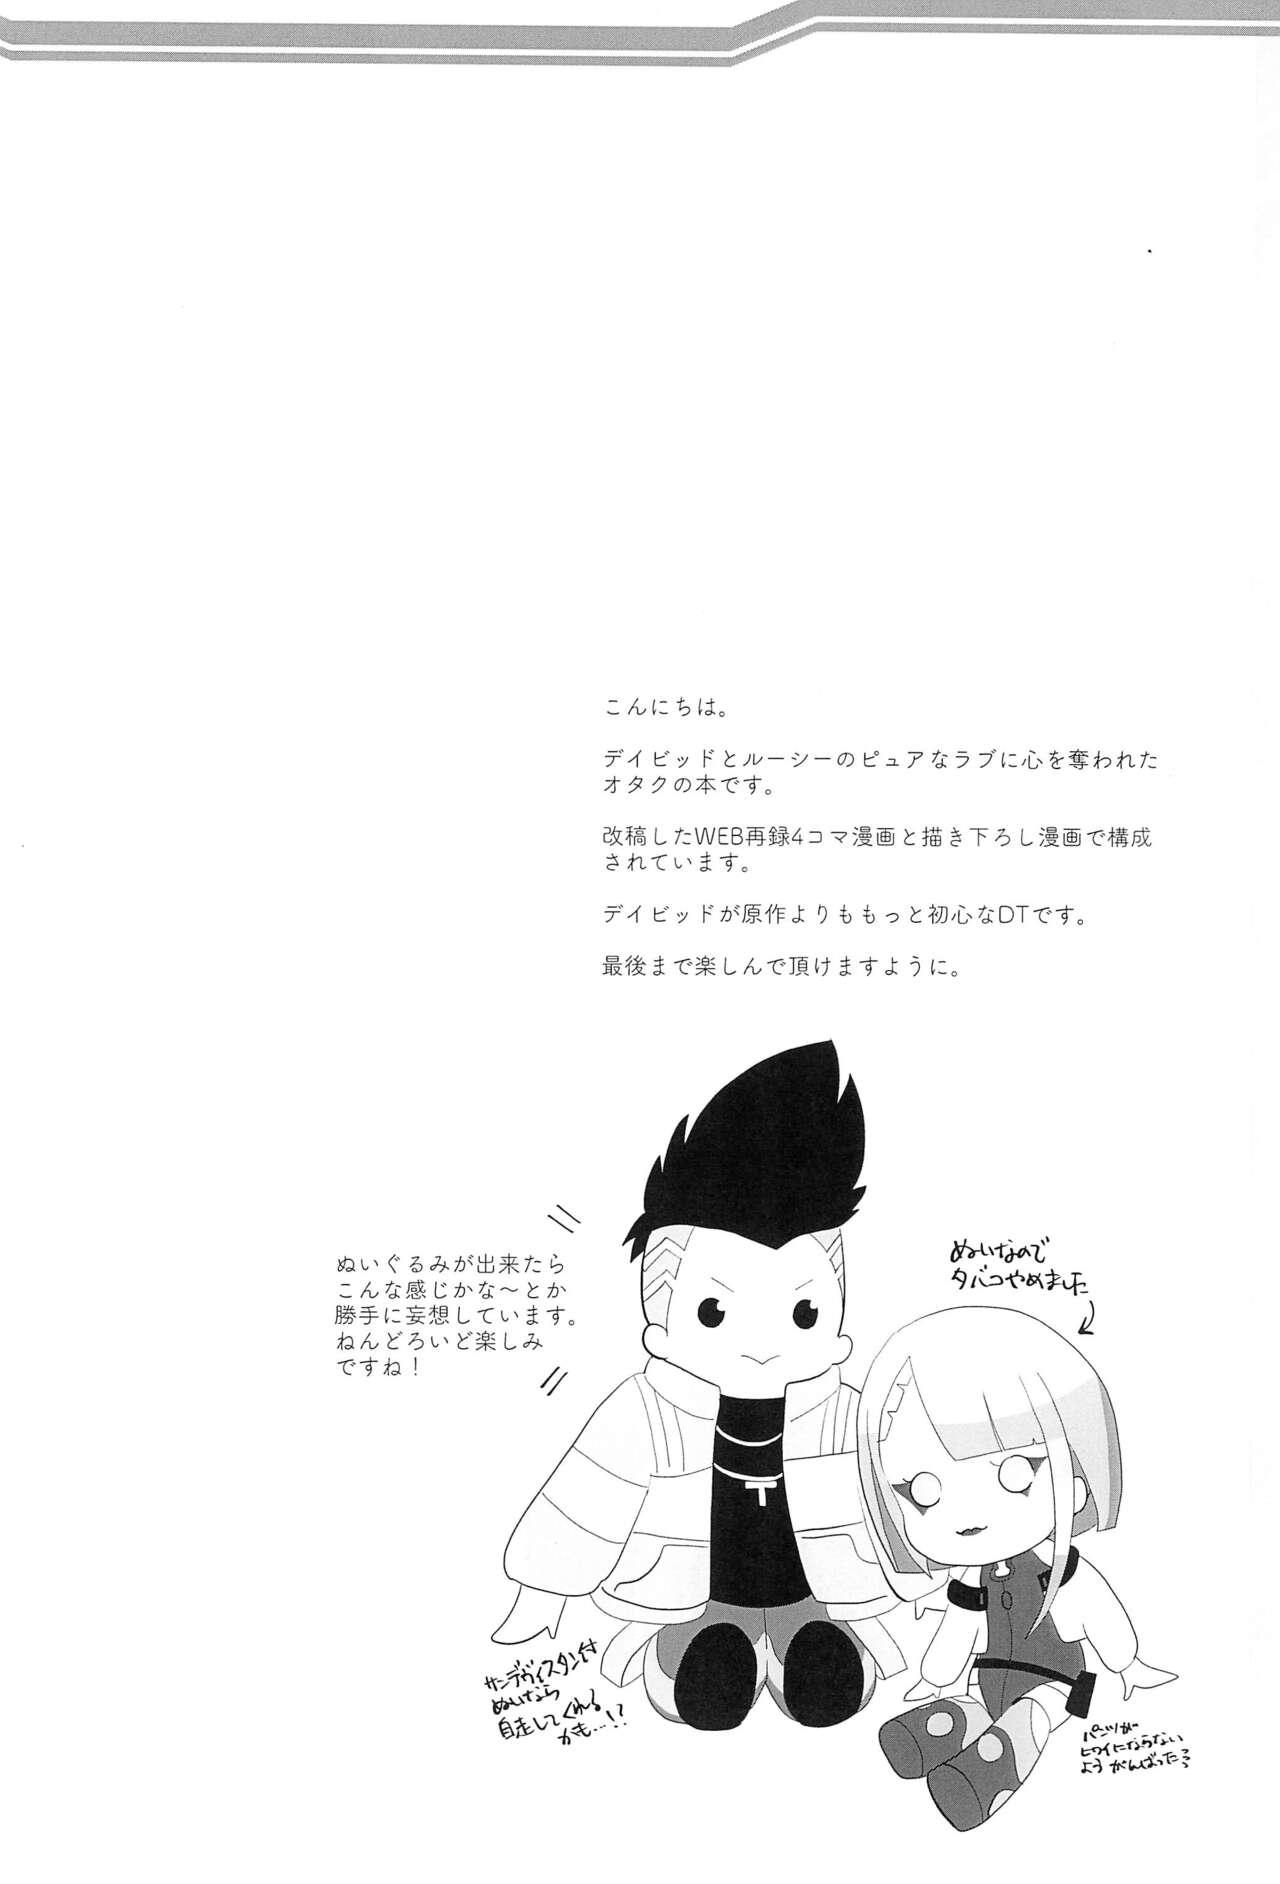 Mallu runners high! - Cyberpunk Kashima - Page 4